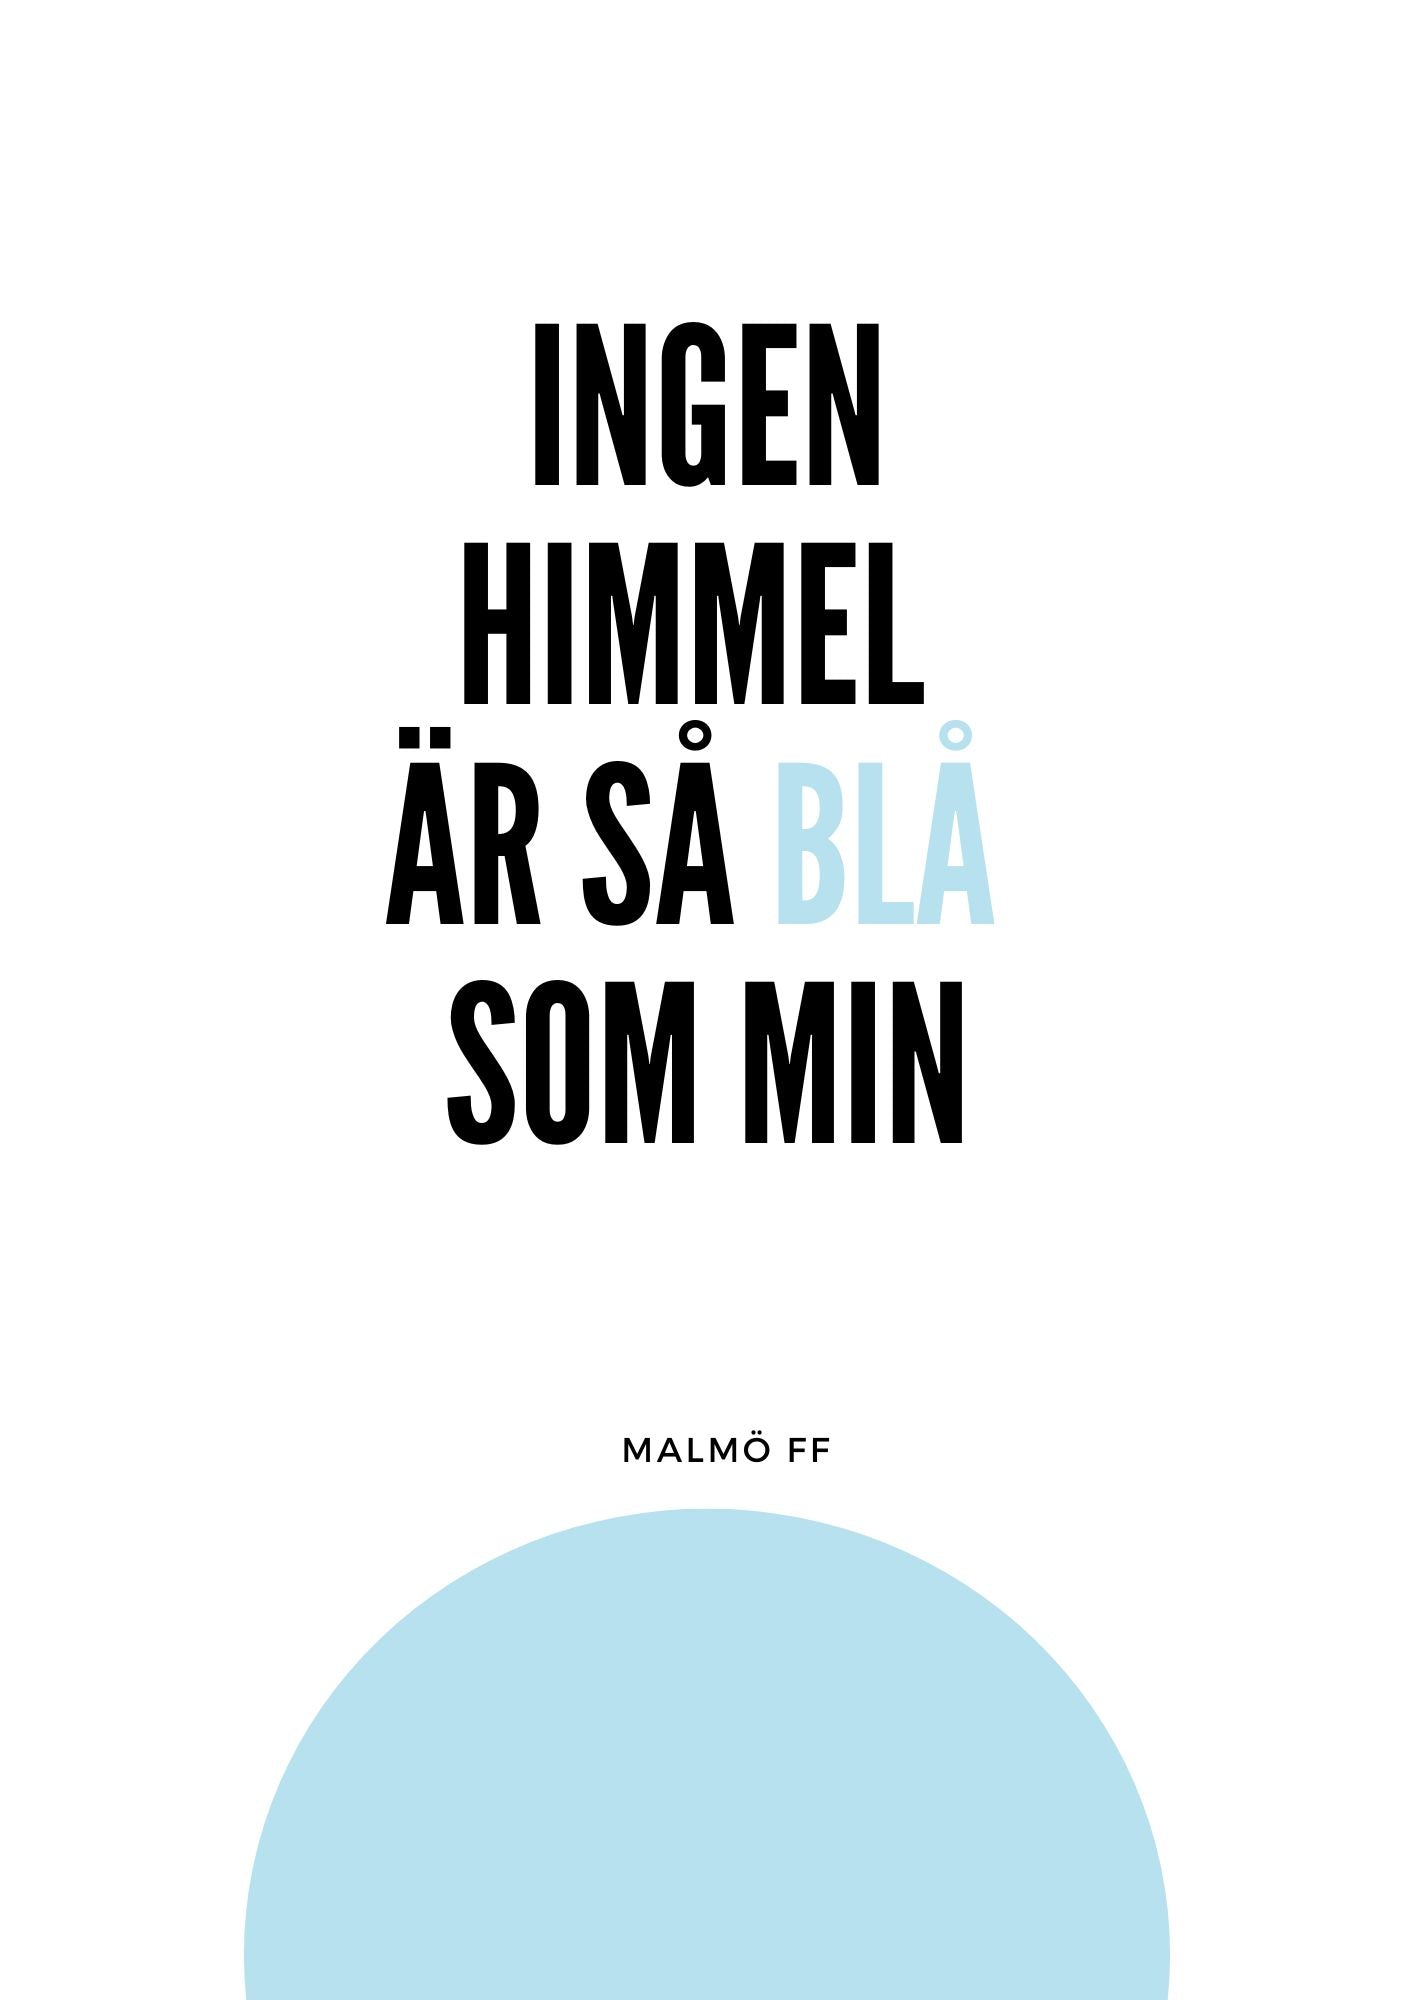 Malmö FF - Ingen himmel är så blå som min Poster 3 Min Poster